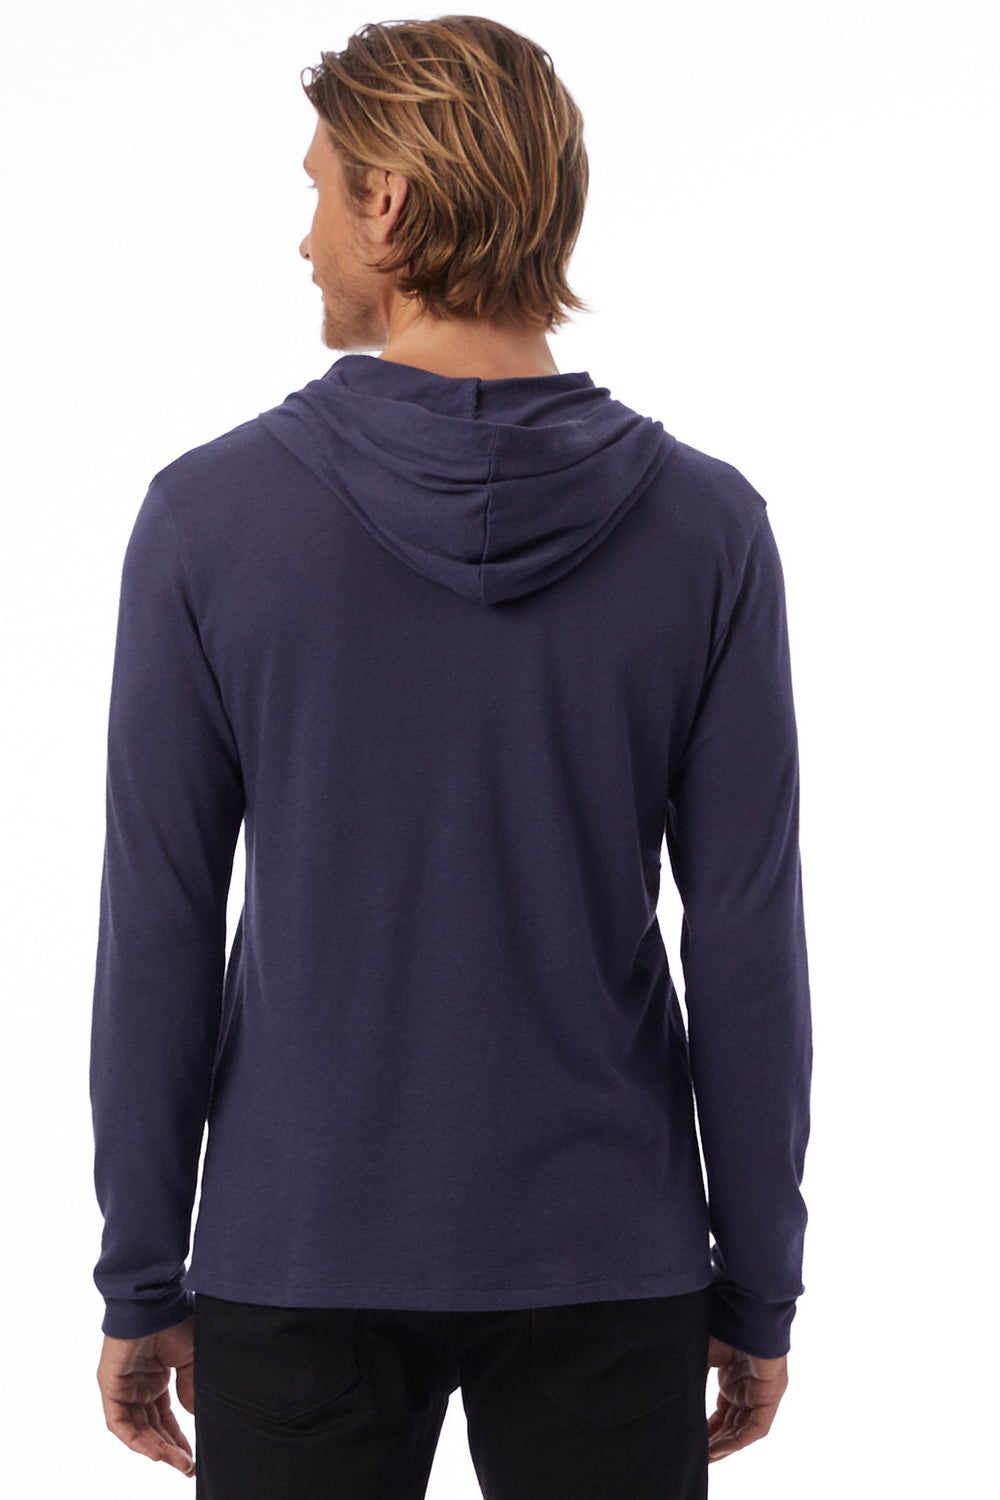 Alternative 5123 Mens Vintage Keeper Long Sleeve Hooded T-Shirt Hoodie Navy Blue Model Back